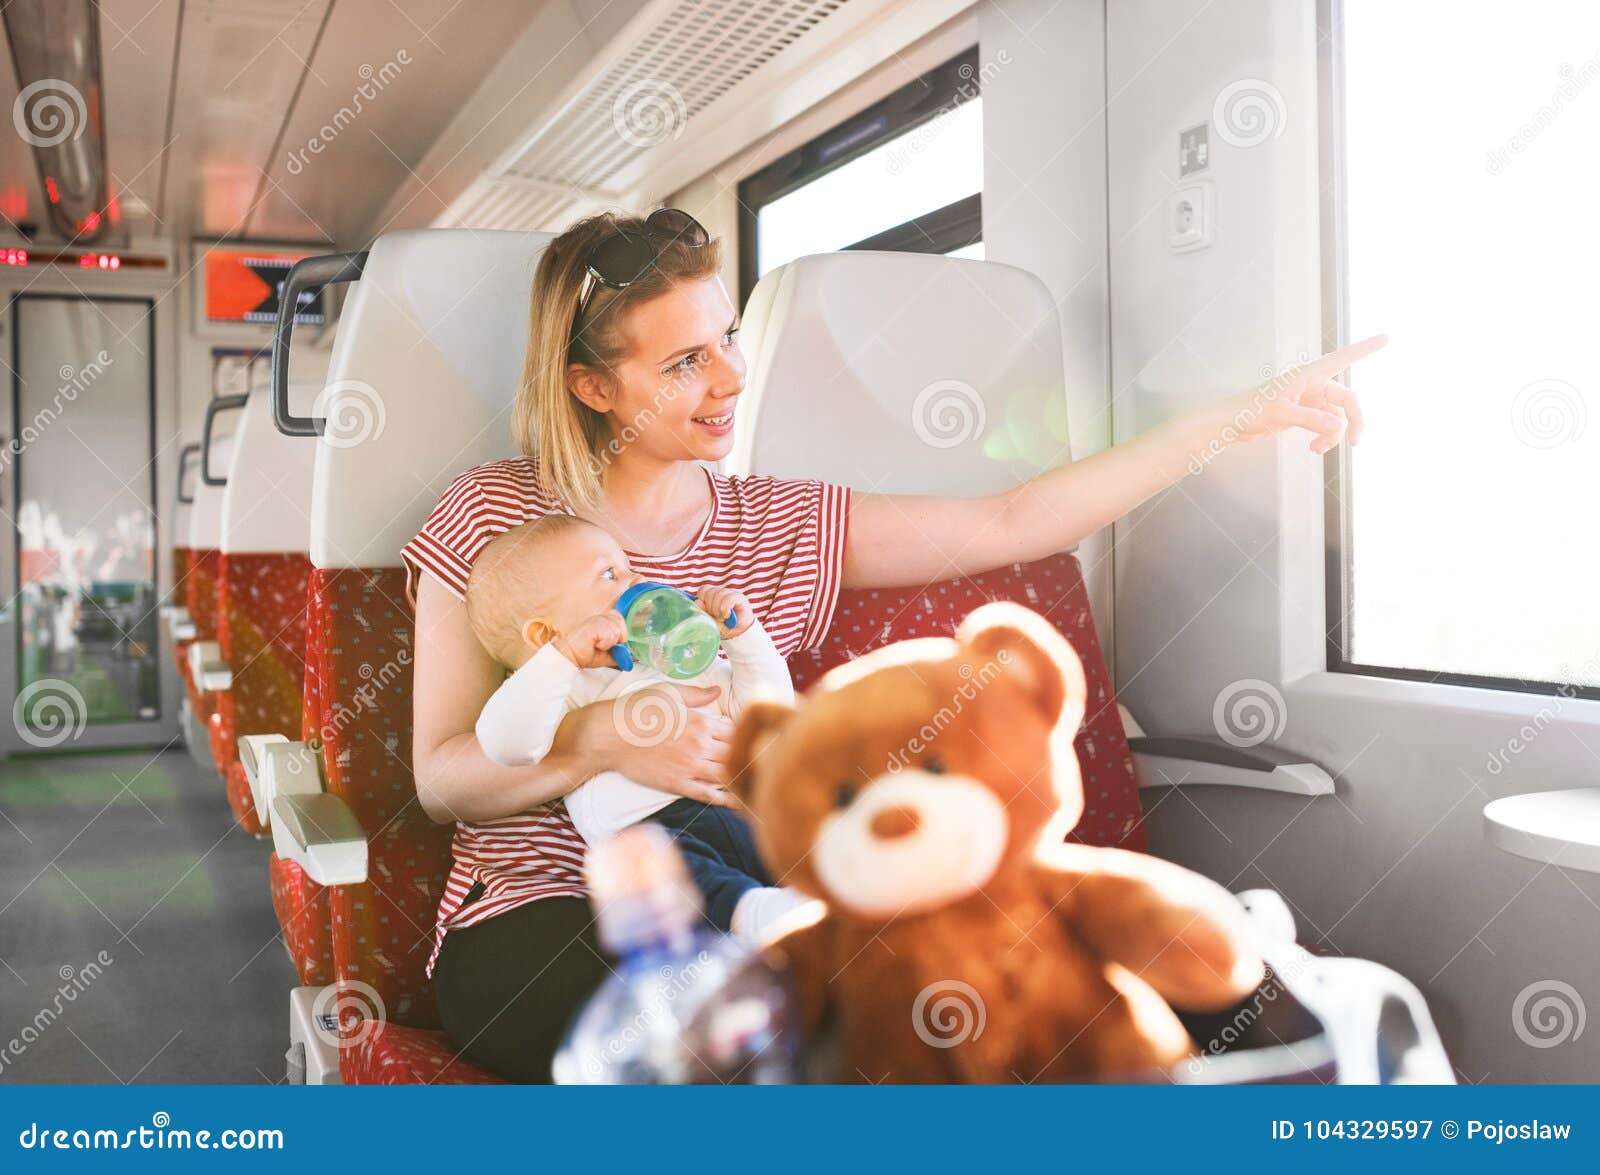 12 поезда мама. Путешествие с детьми на поезде. Женщина с детьми в поезде. В поезд с новорожденным. Мама с ребенком в поезде.